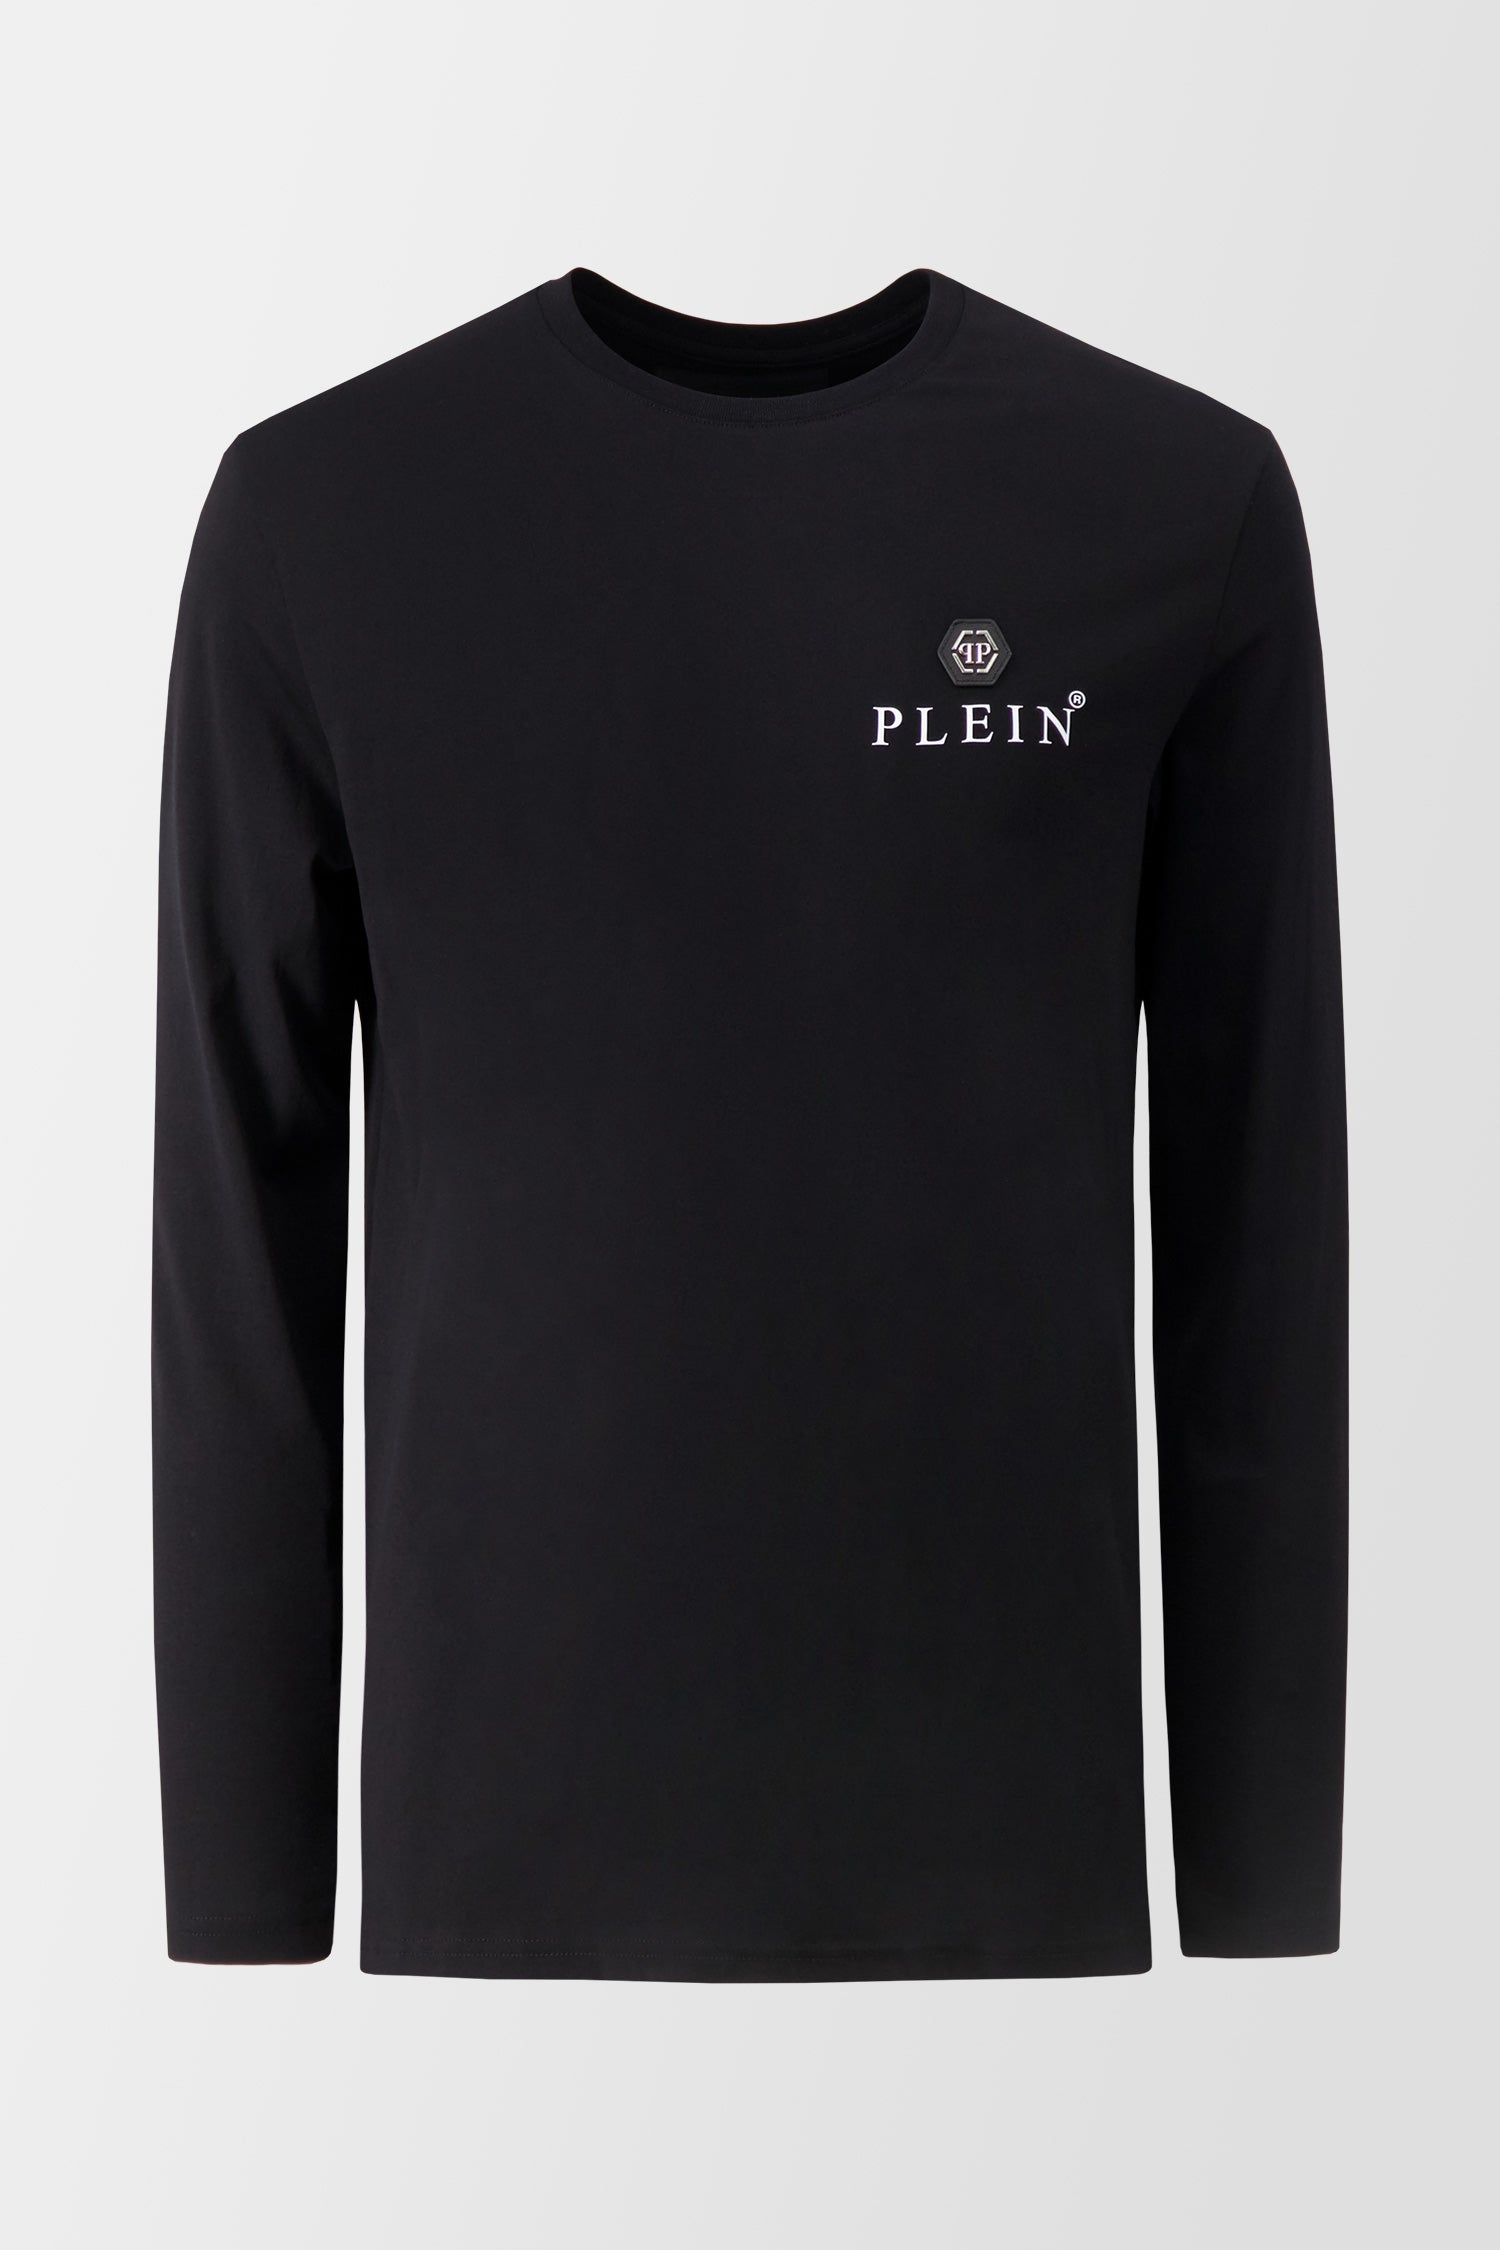 Philipp Plein Men Collection - Original Premium Clothing And Accessories